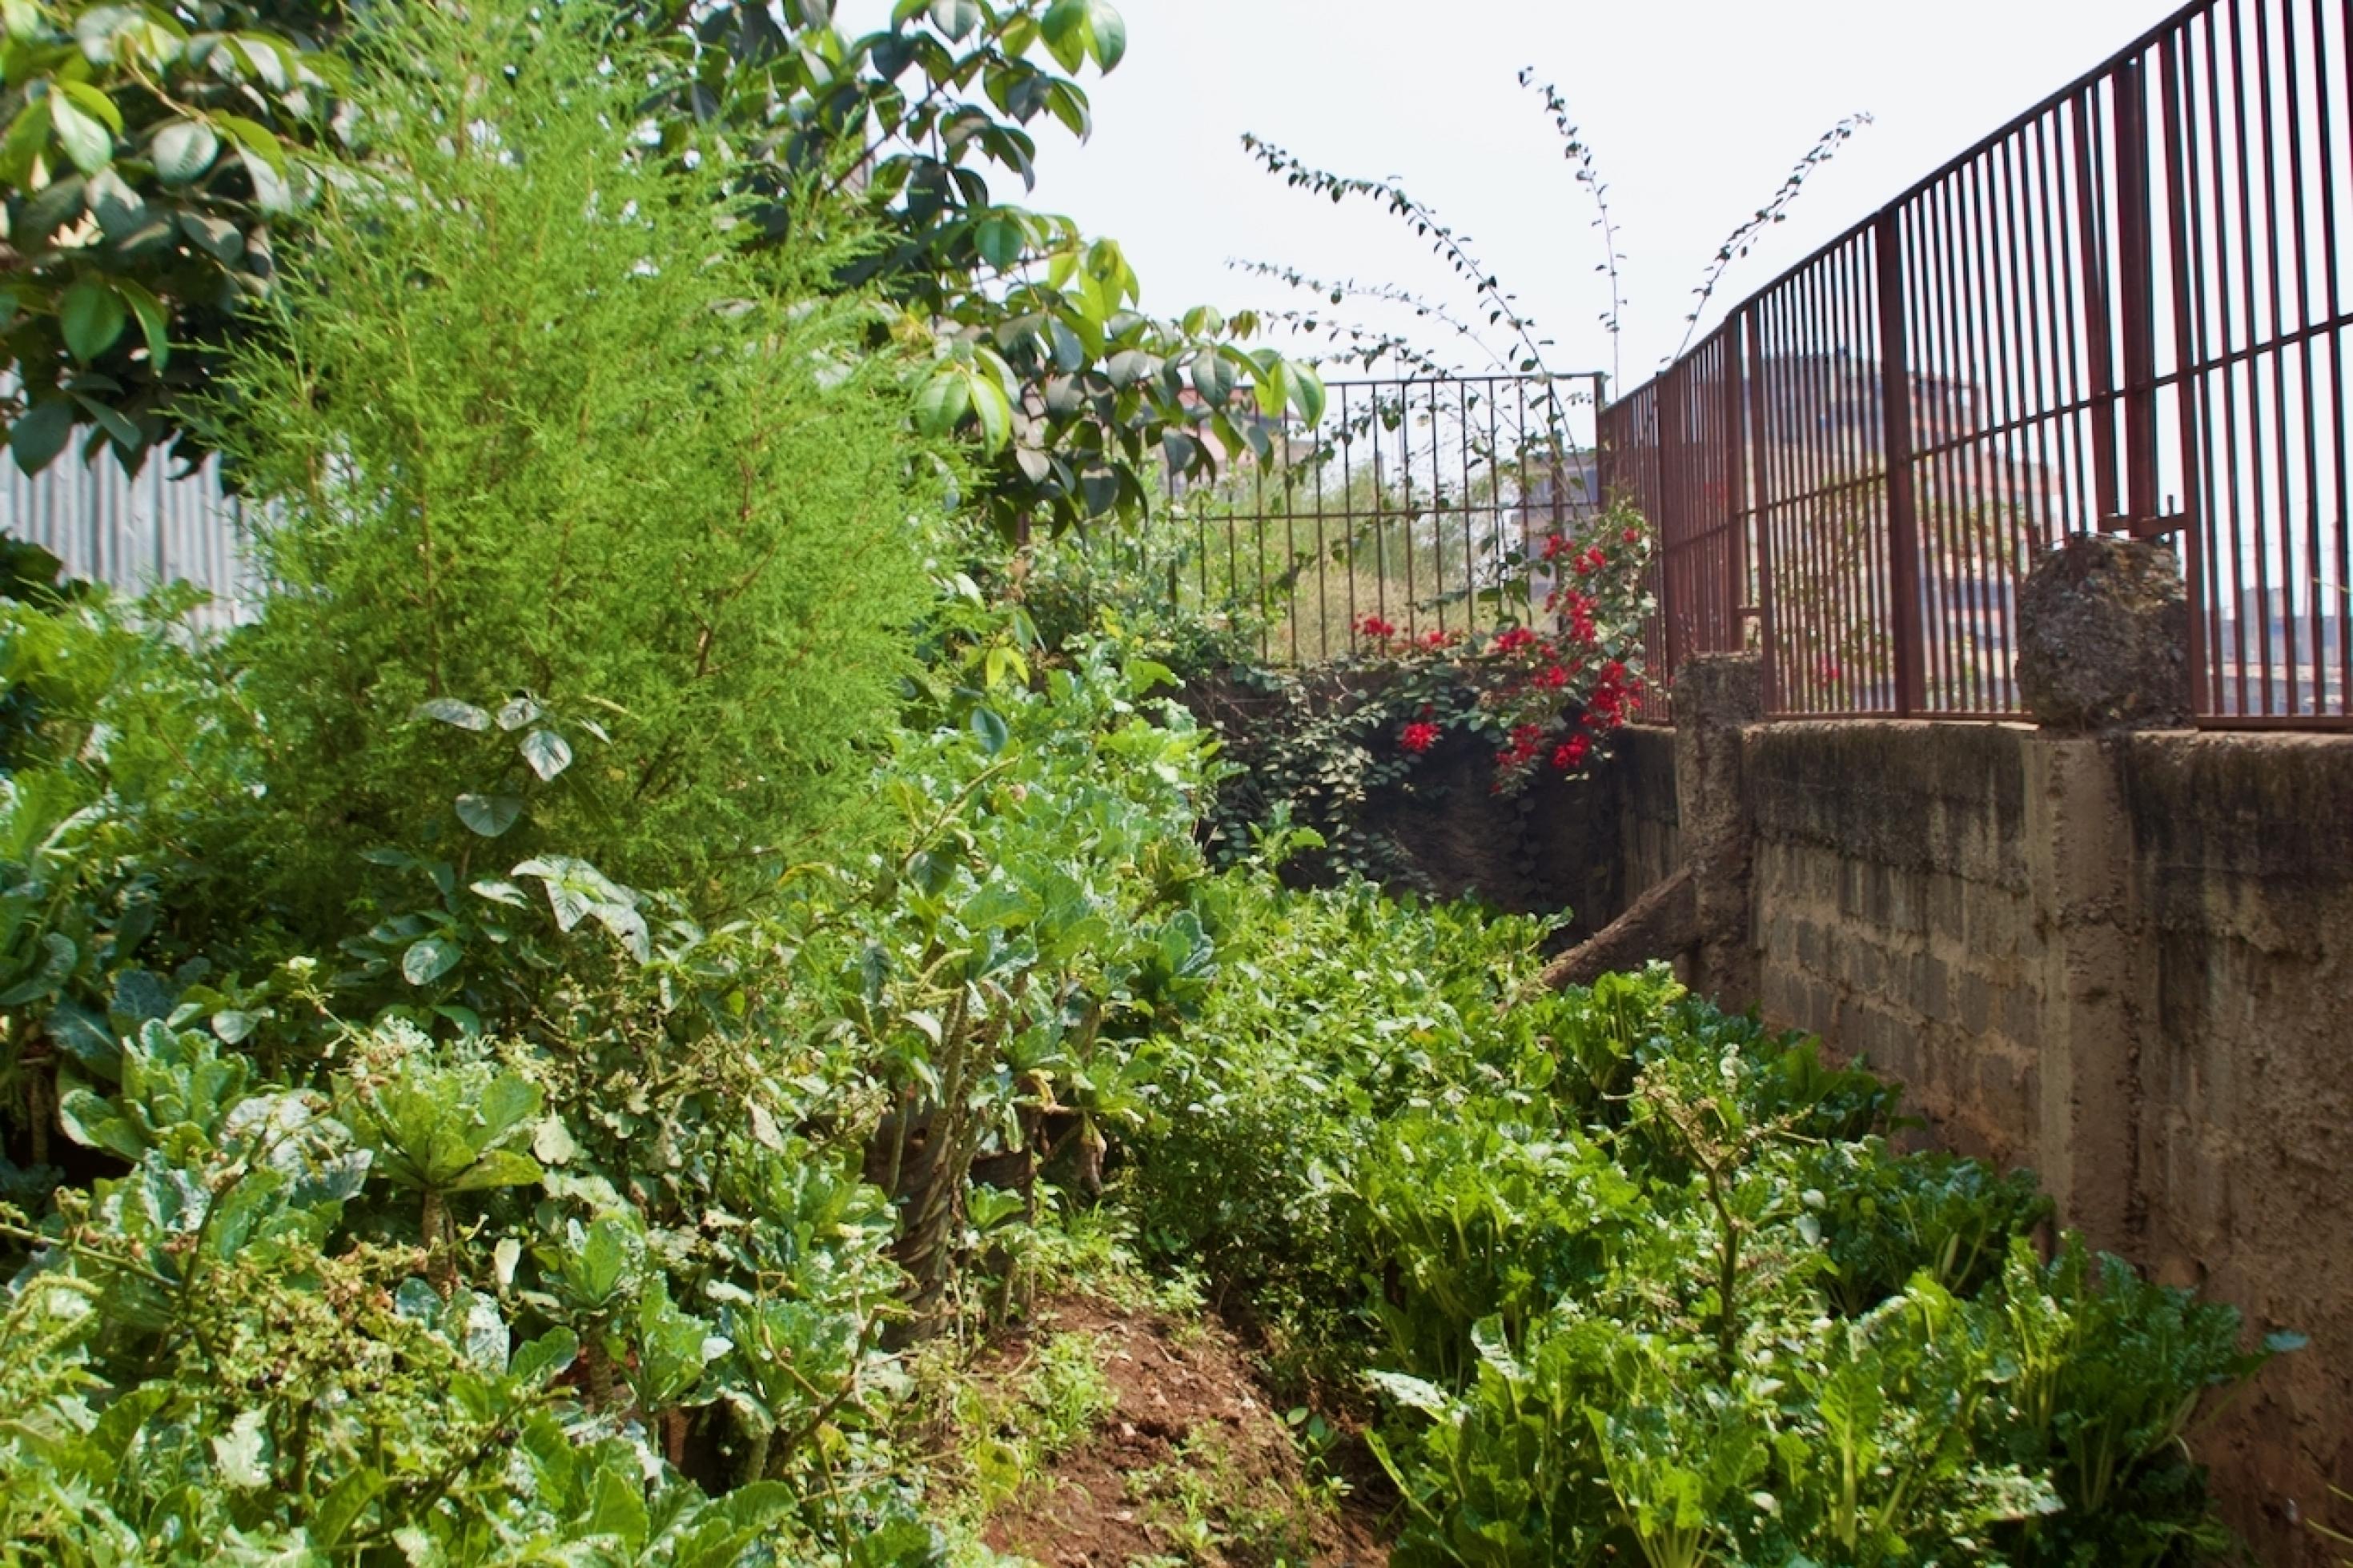 Eine Mauer, die mit einem Gitter abgeschlossen ist, umfasst ein kleines Gartenstück. Das Gemüse wächst nicht am Boden, sondern in Säcken in die Höhe. So wirkt der Garten besonders üppig bewachsen.